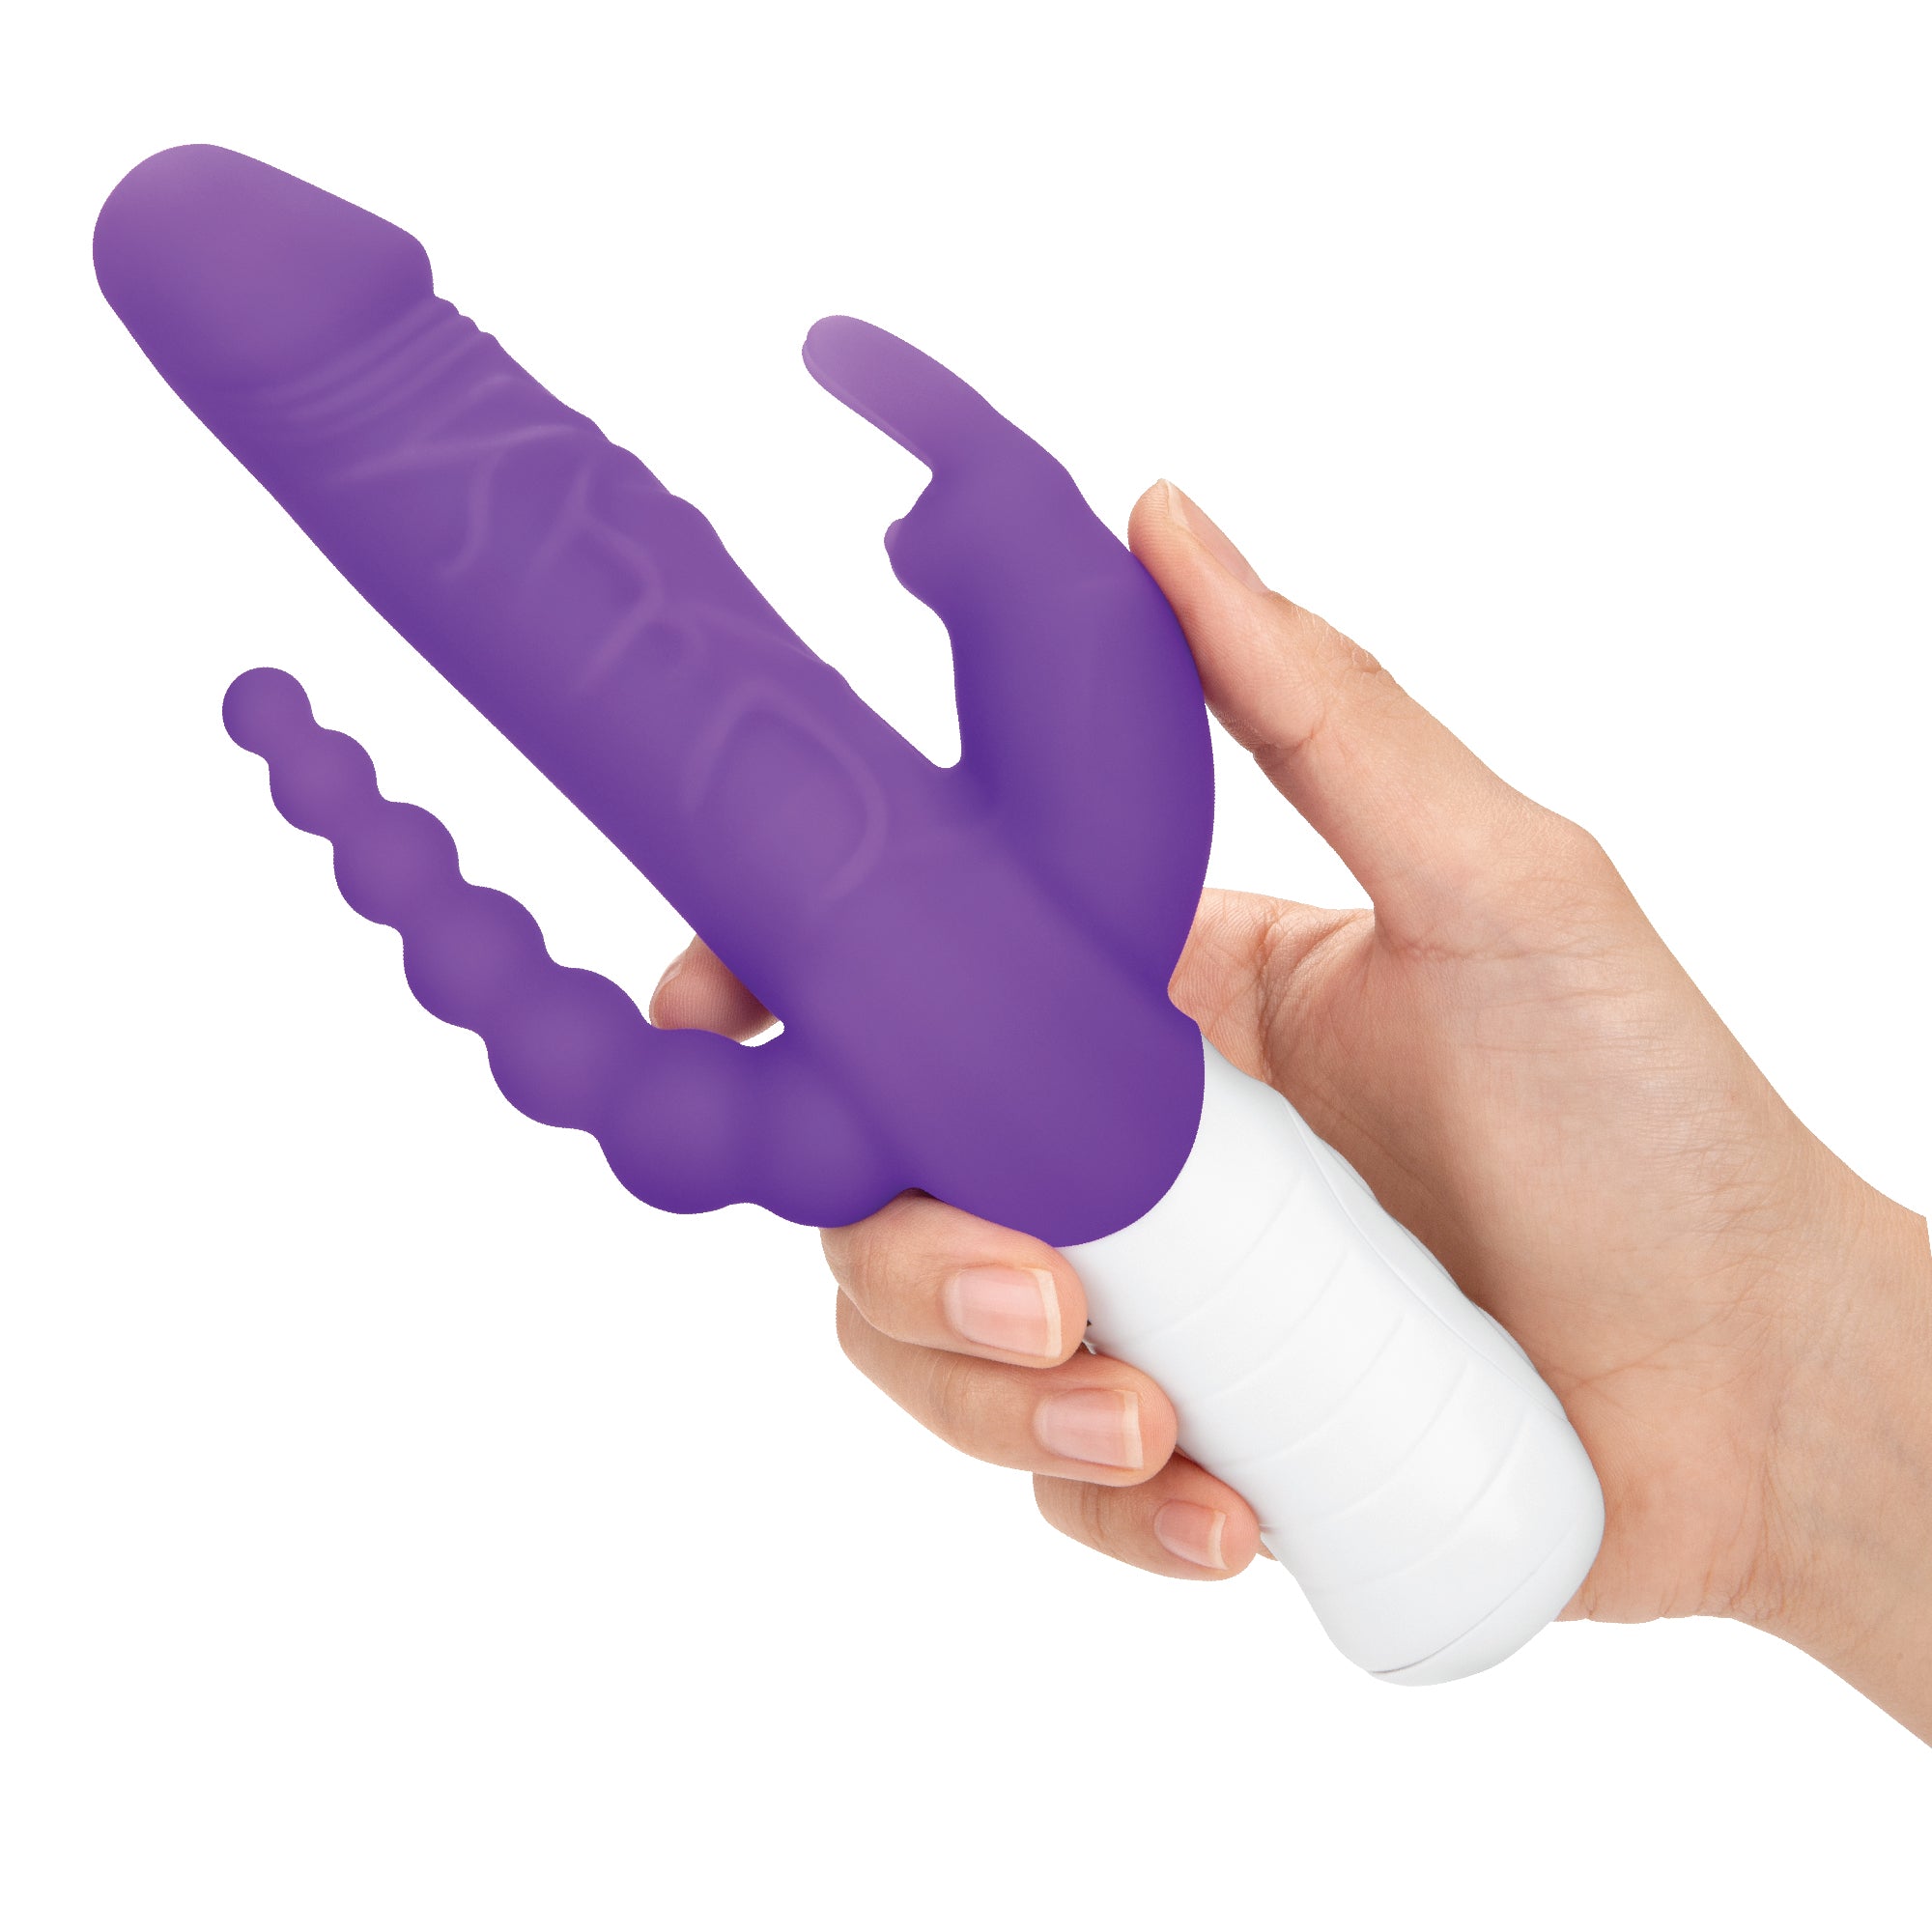 Rechargeable Slim Realistic Double Penetration Rabbit Vibrator - Purple